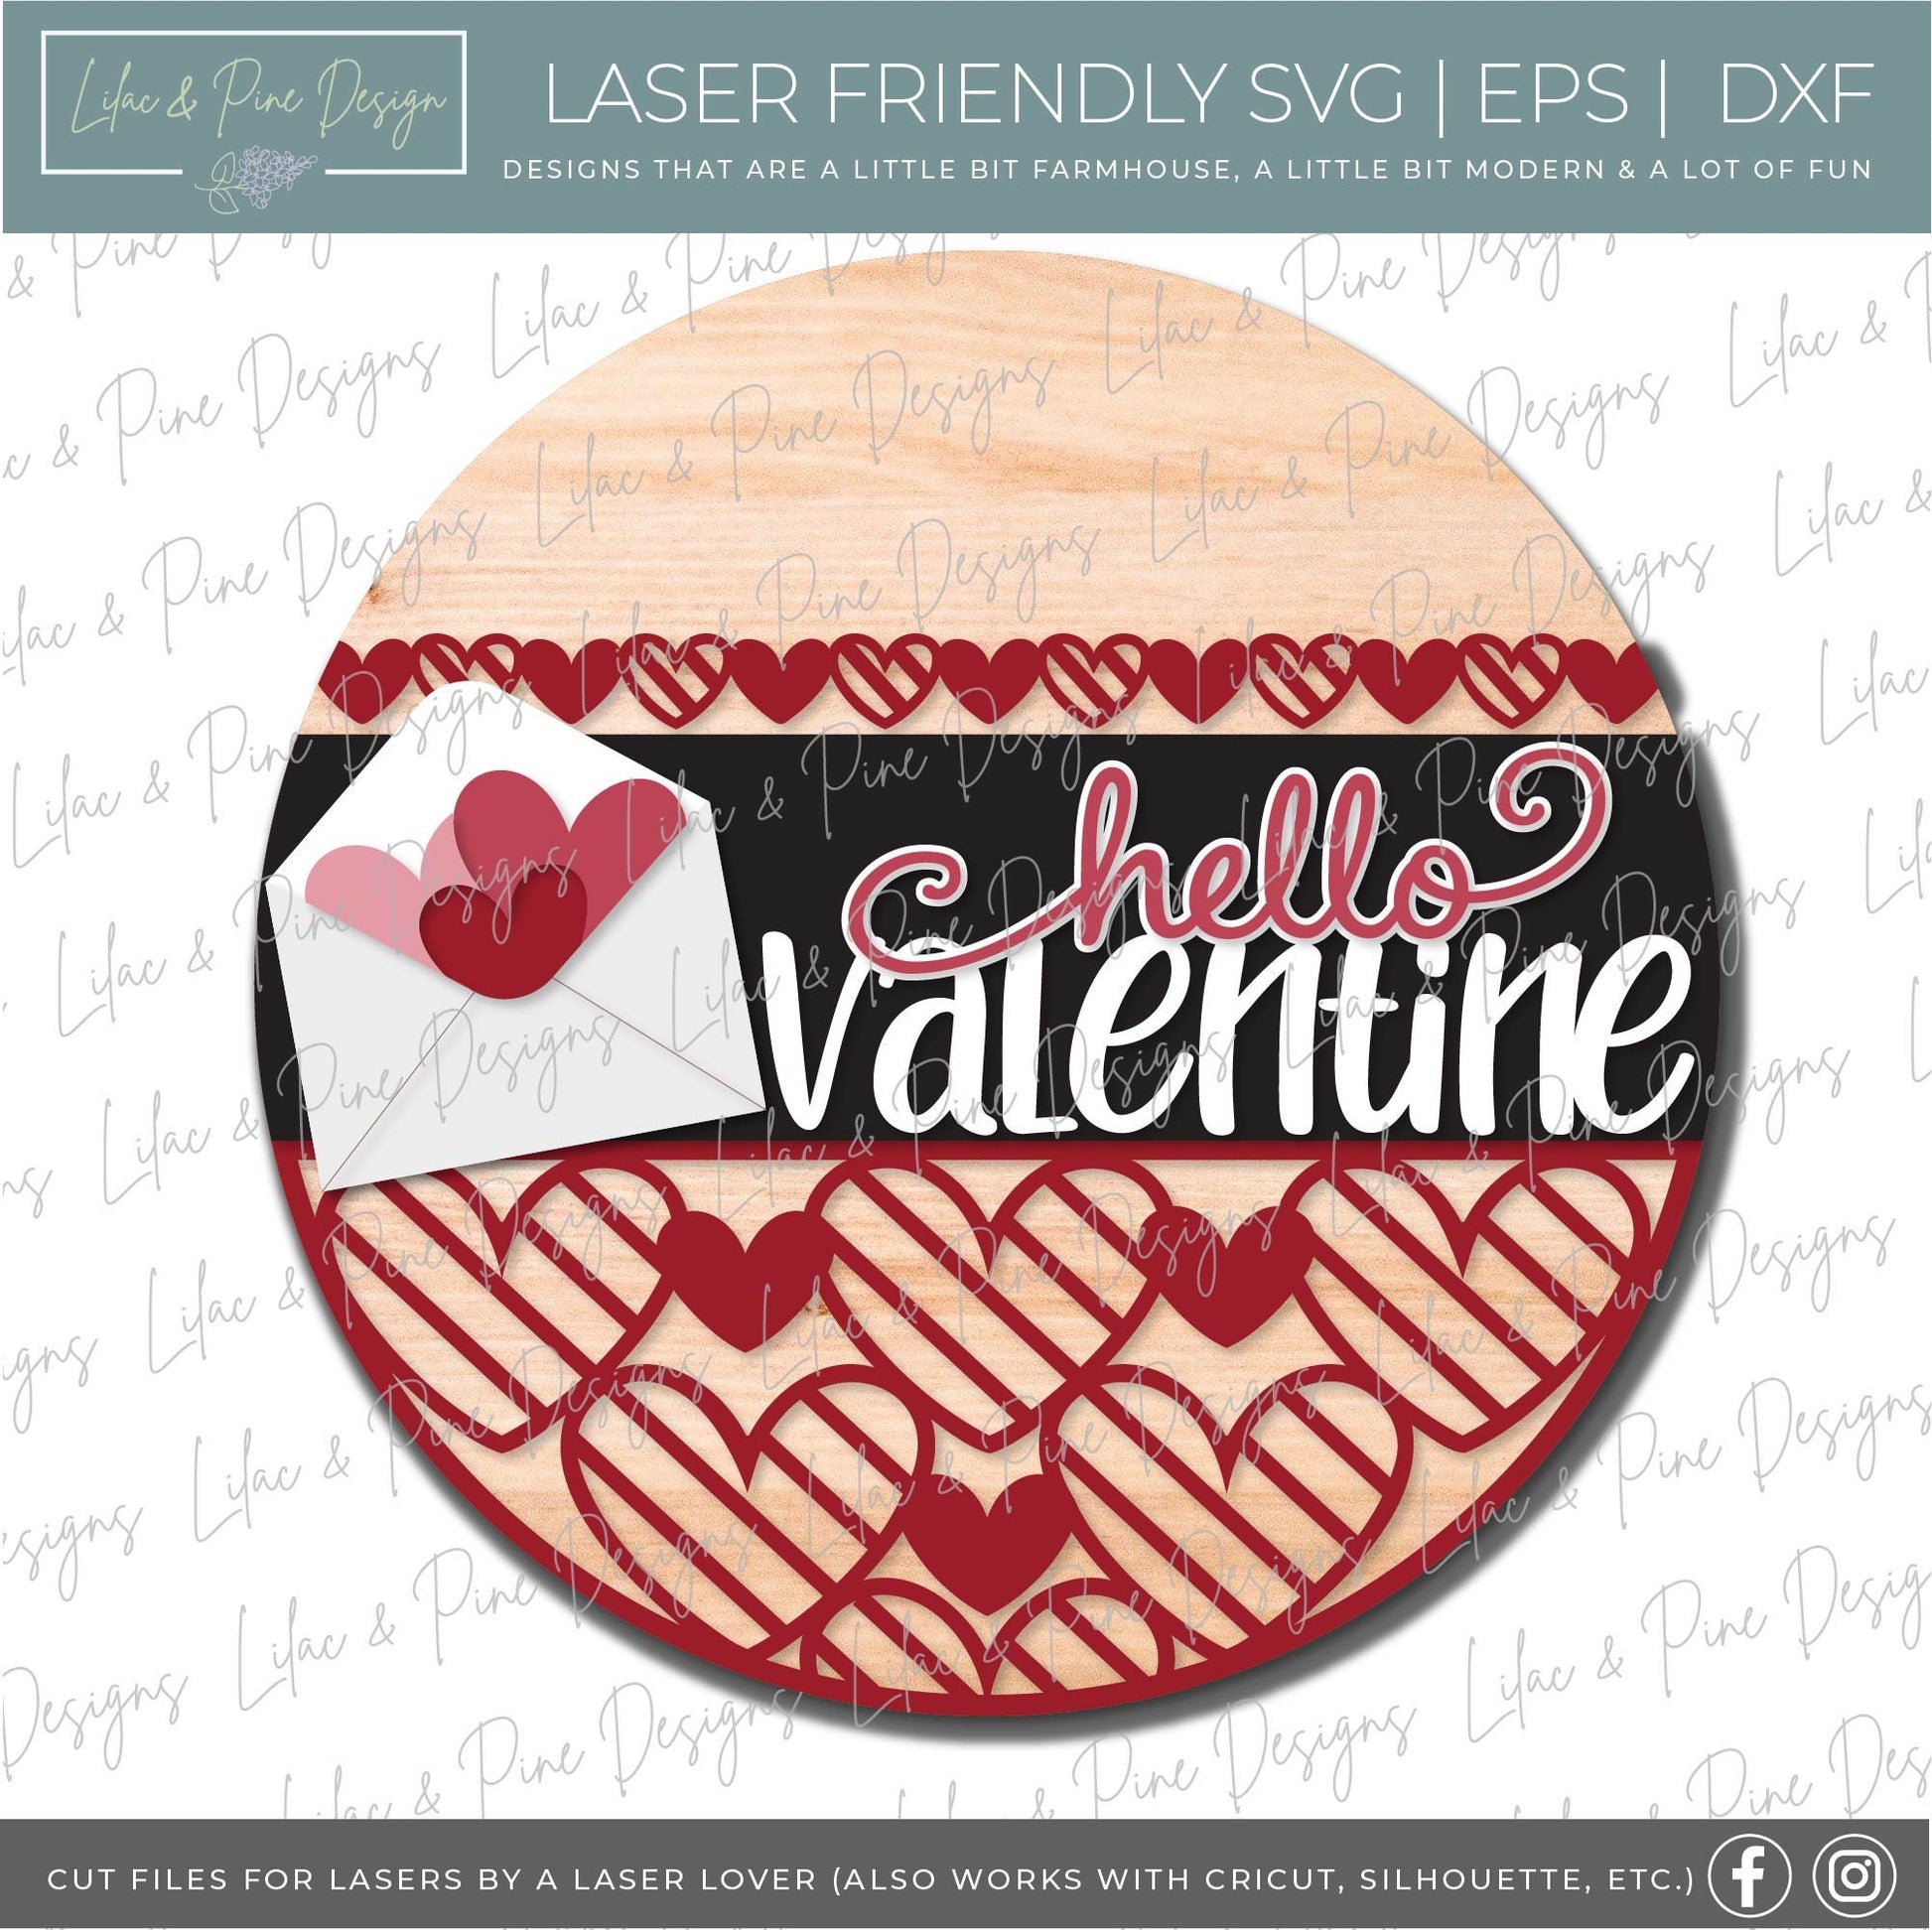 hello Valentine sign SVG, Valentine door hanger, Valentine envelope svg, heart SVG, Valentine door decor, Glowforge file, laser svg